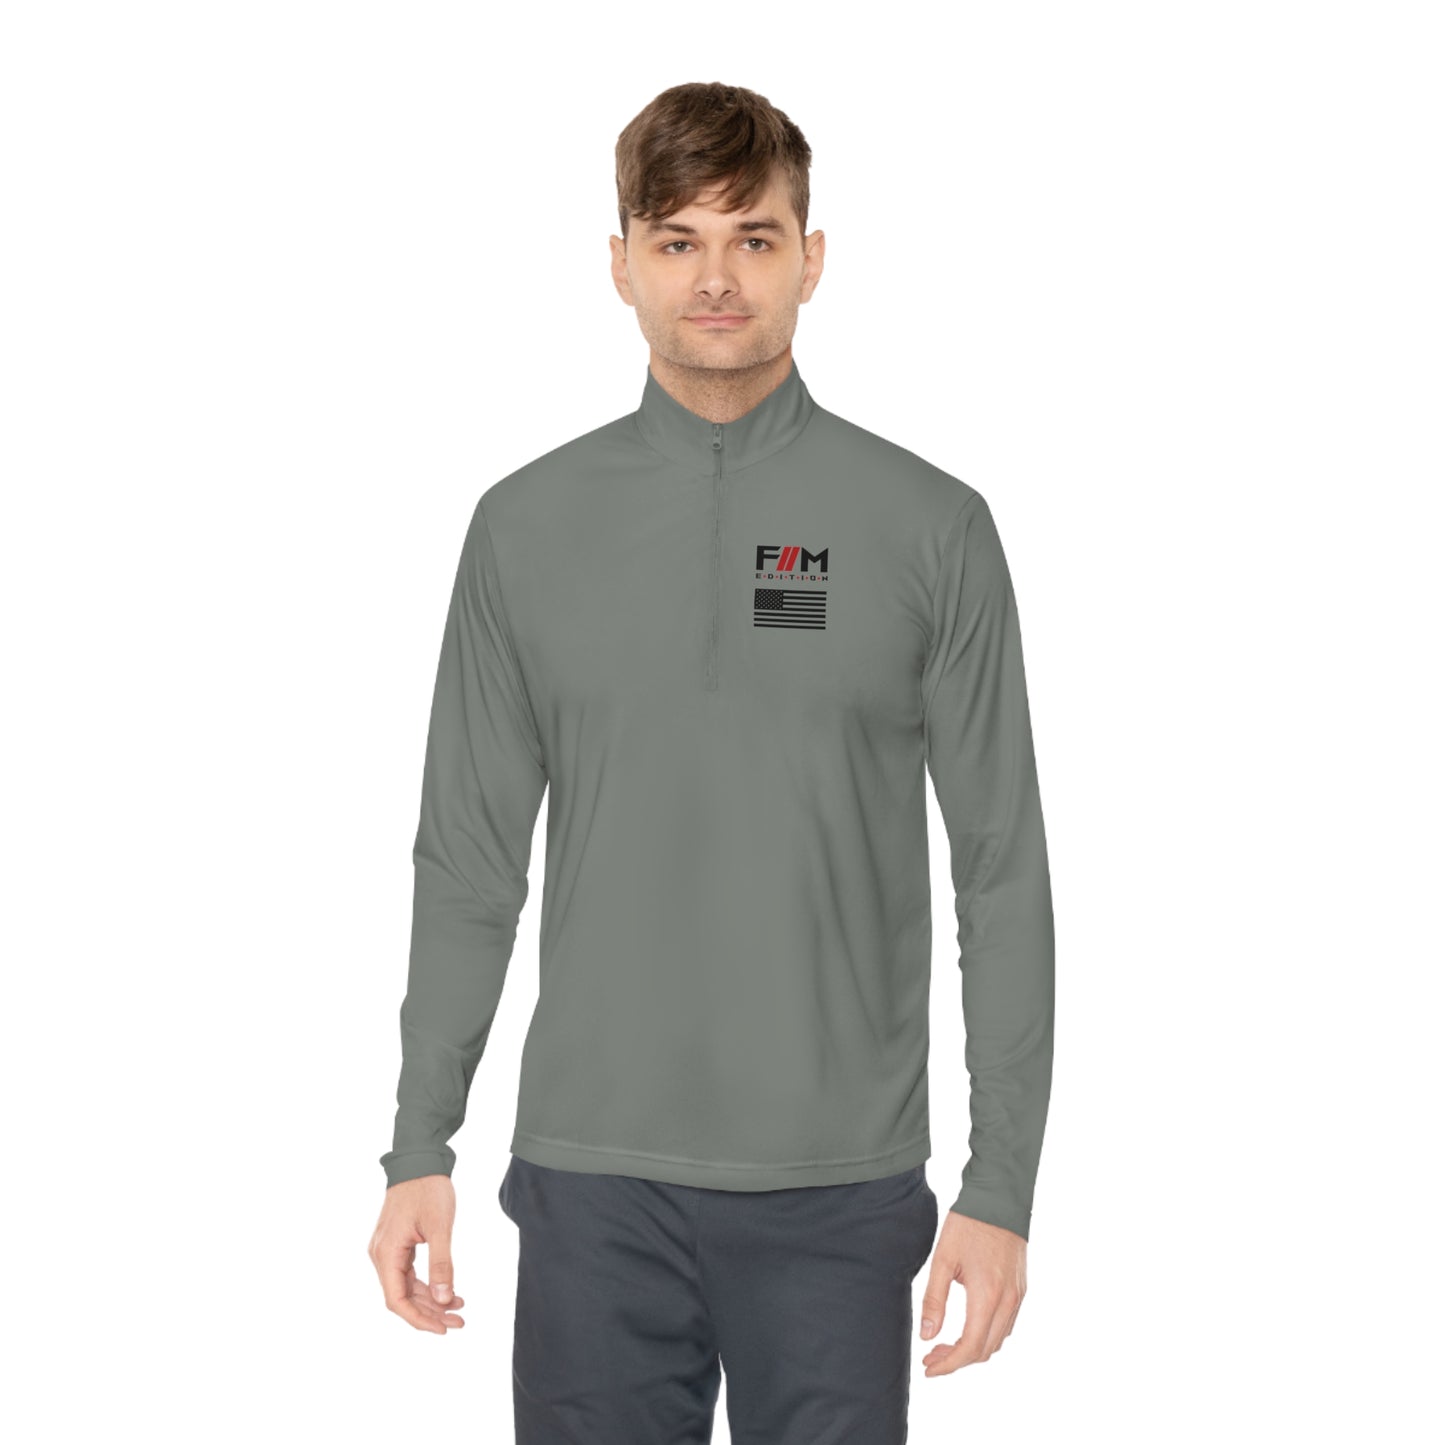 FM Edition Unisex Quarter-Zip Pullover